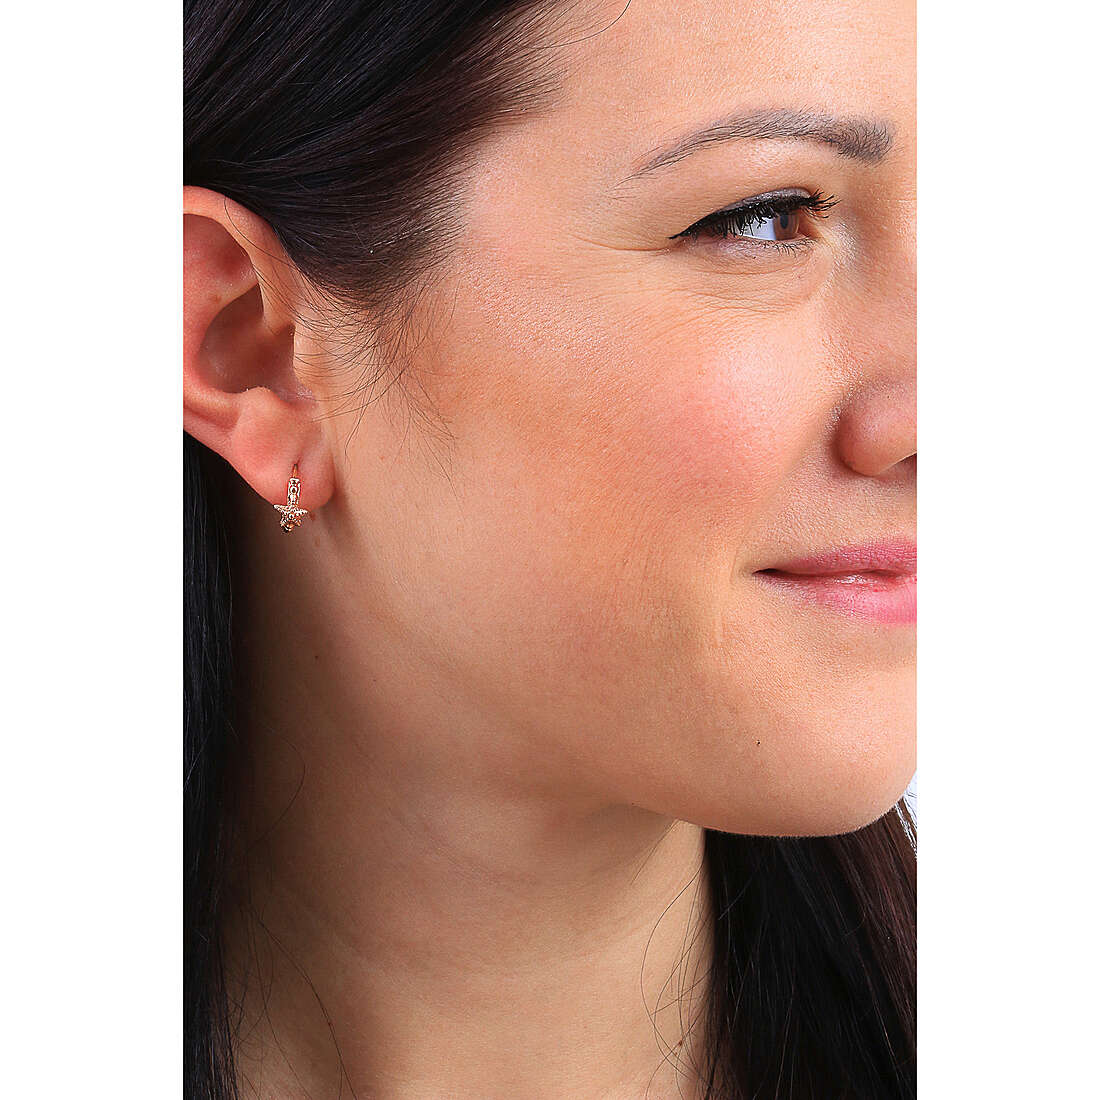 Rosato earrings Storie woman RZO056 wearing